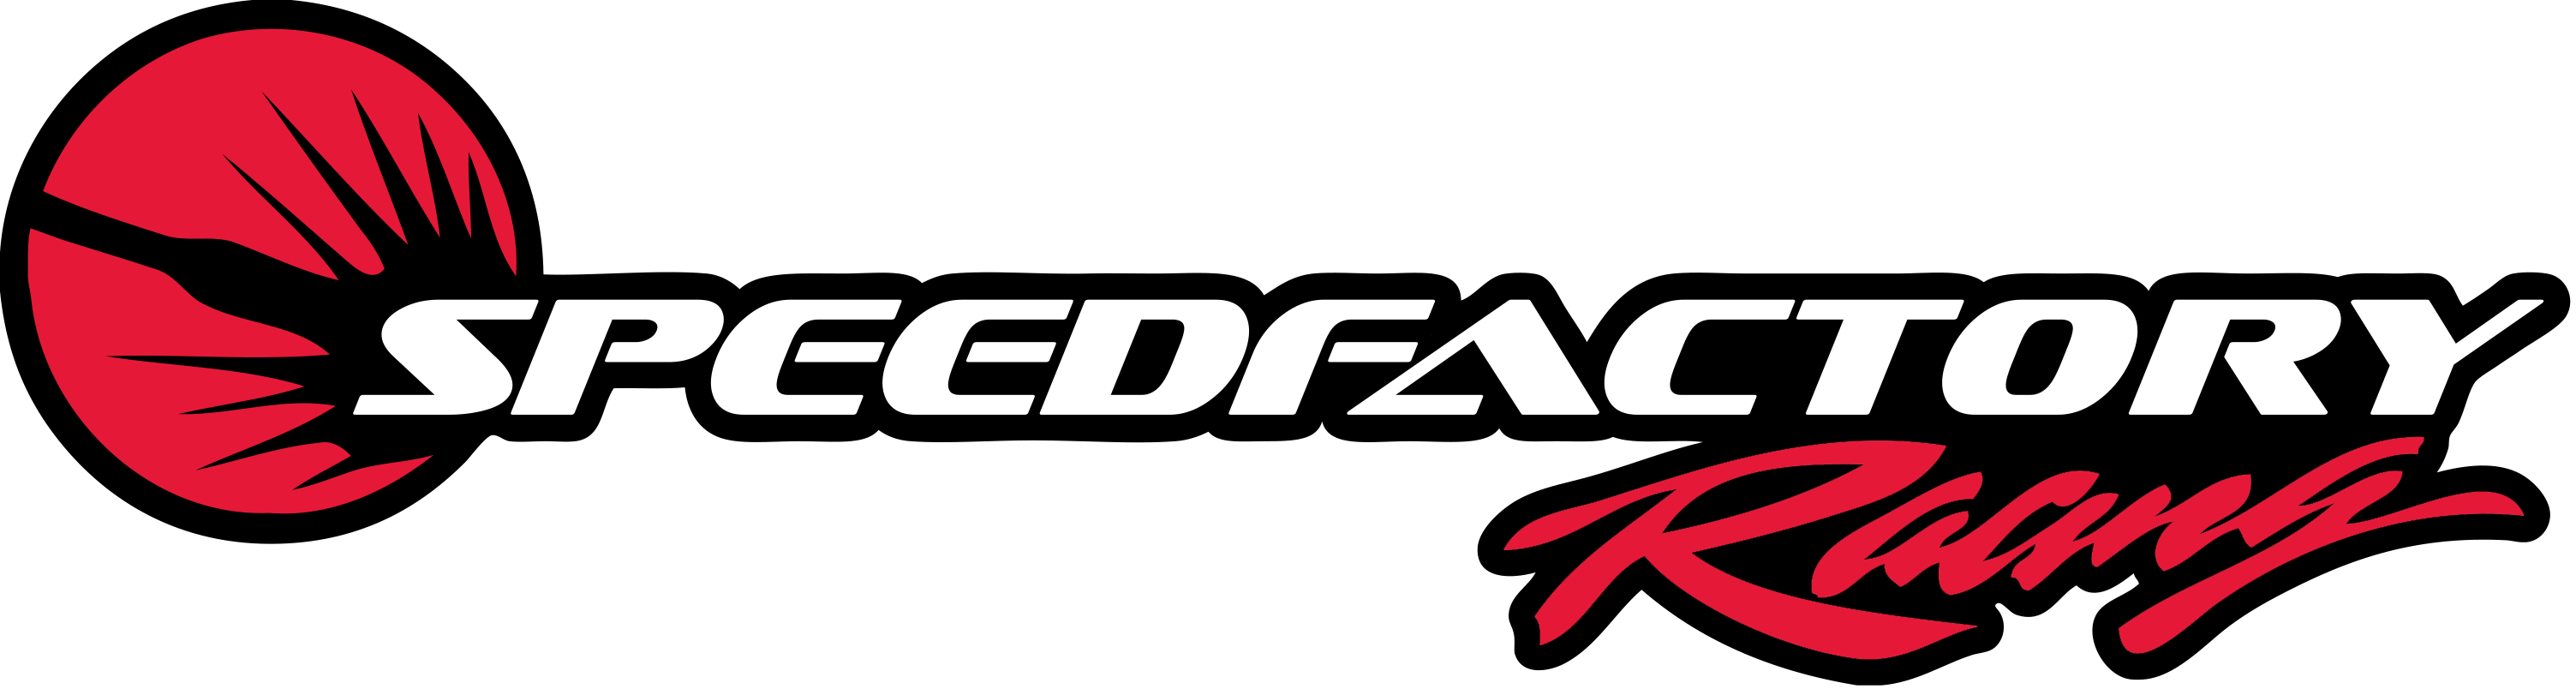 SpeedFactory Racing Logo